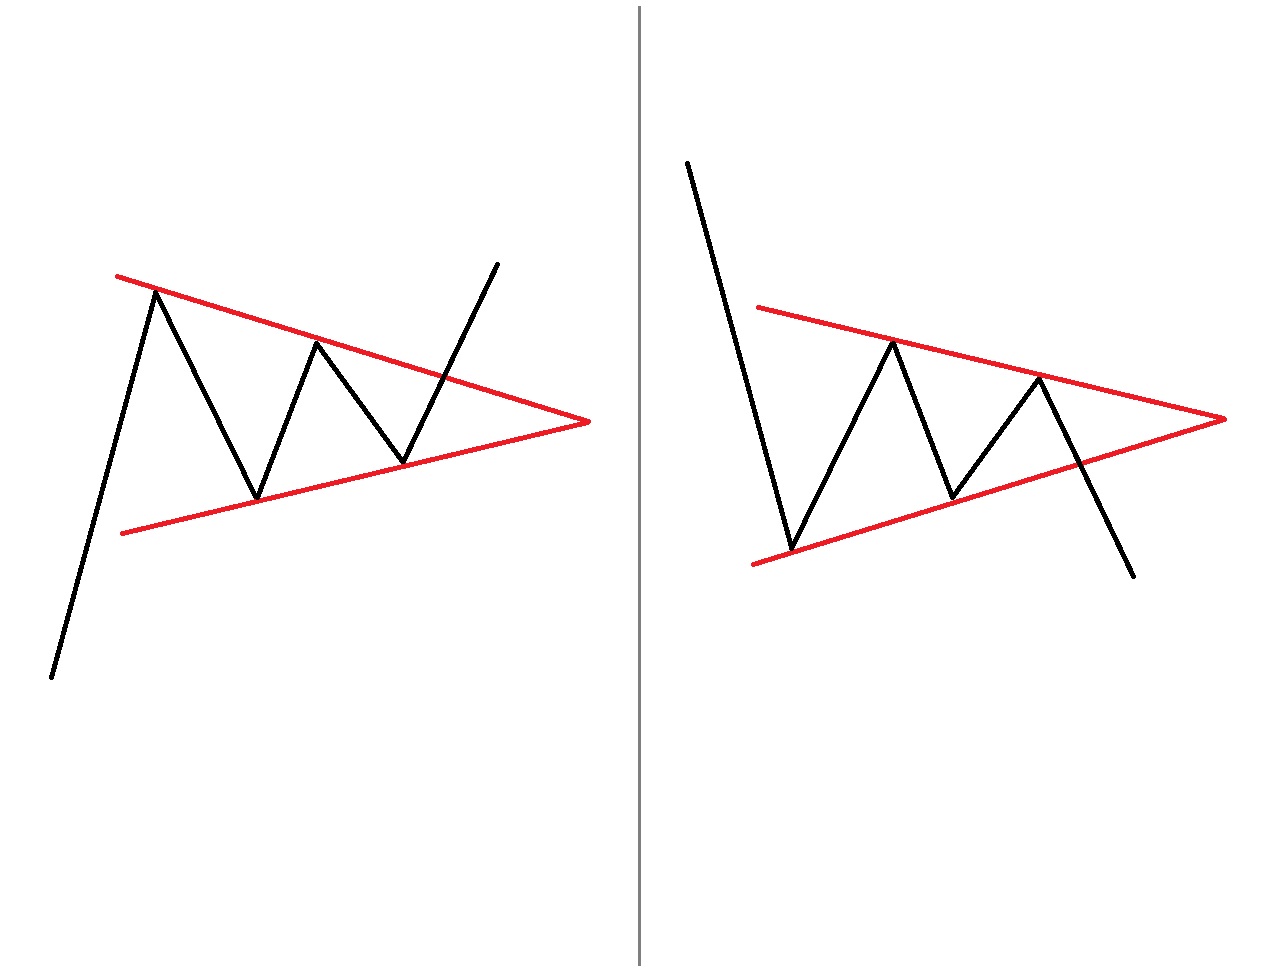 Равнобедренный треугольник